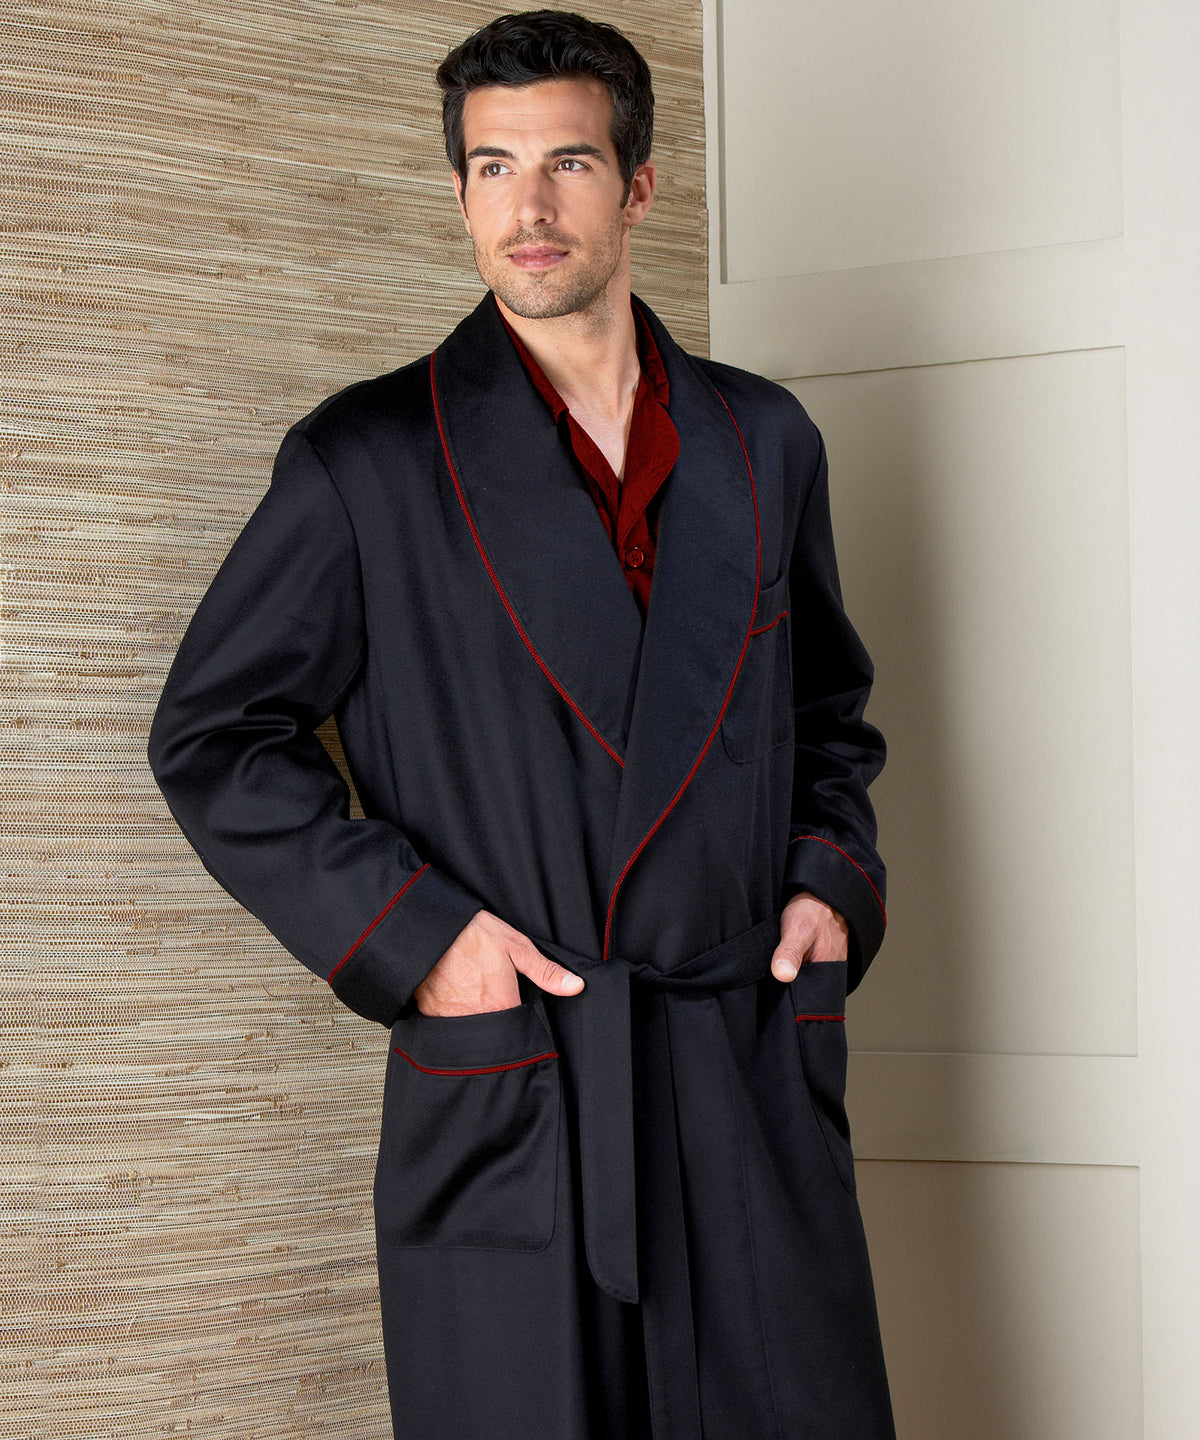 Robe châle en cachemire personnalisable noire Westport sur commande, Men's Big & Tall